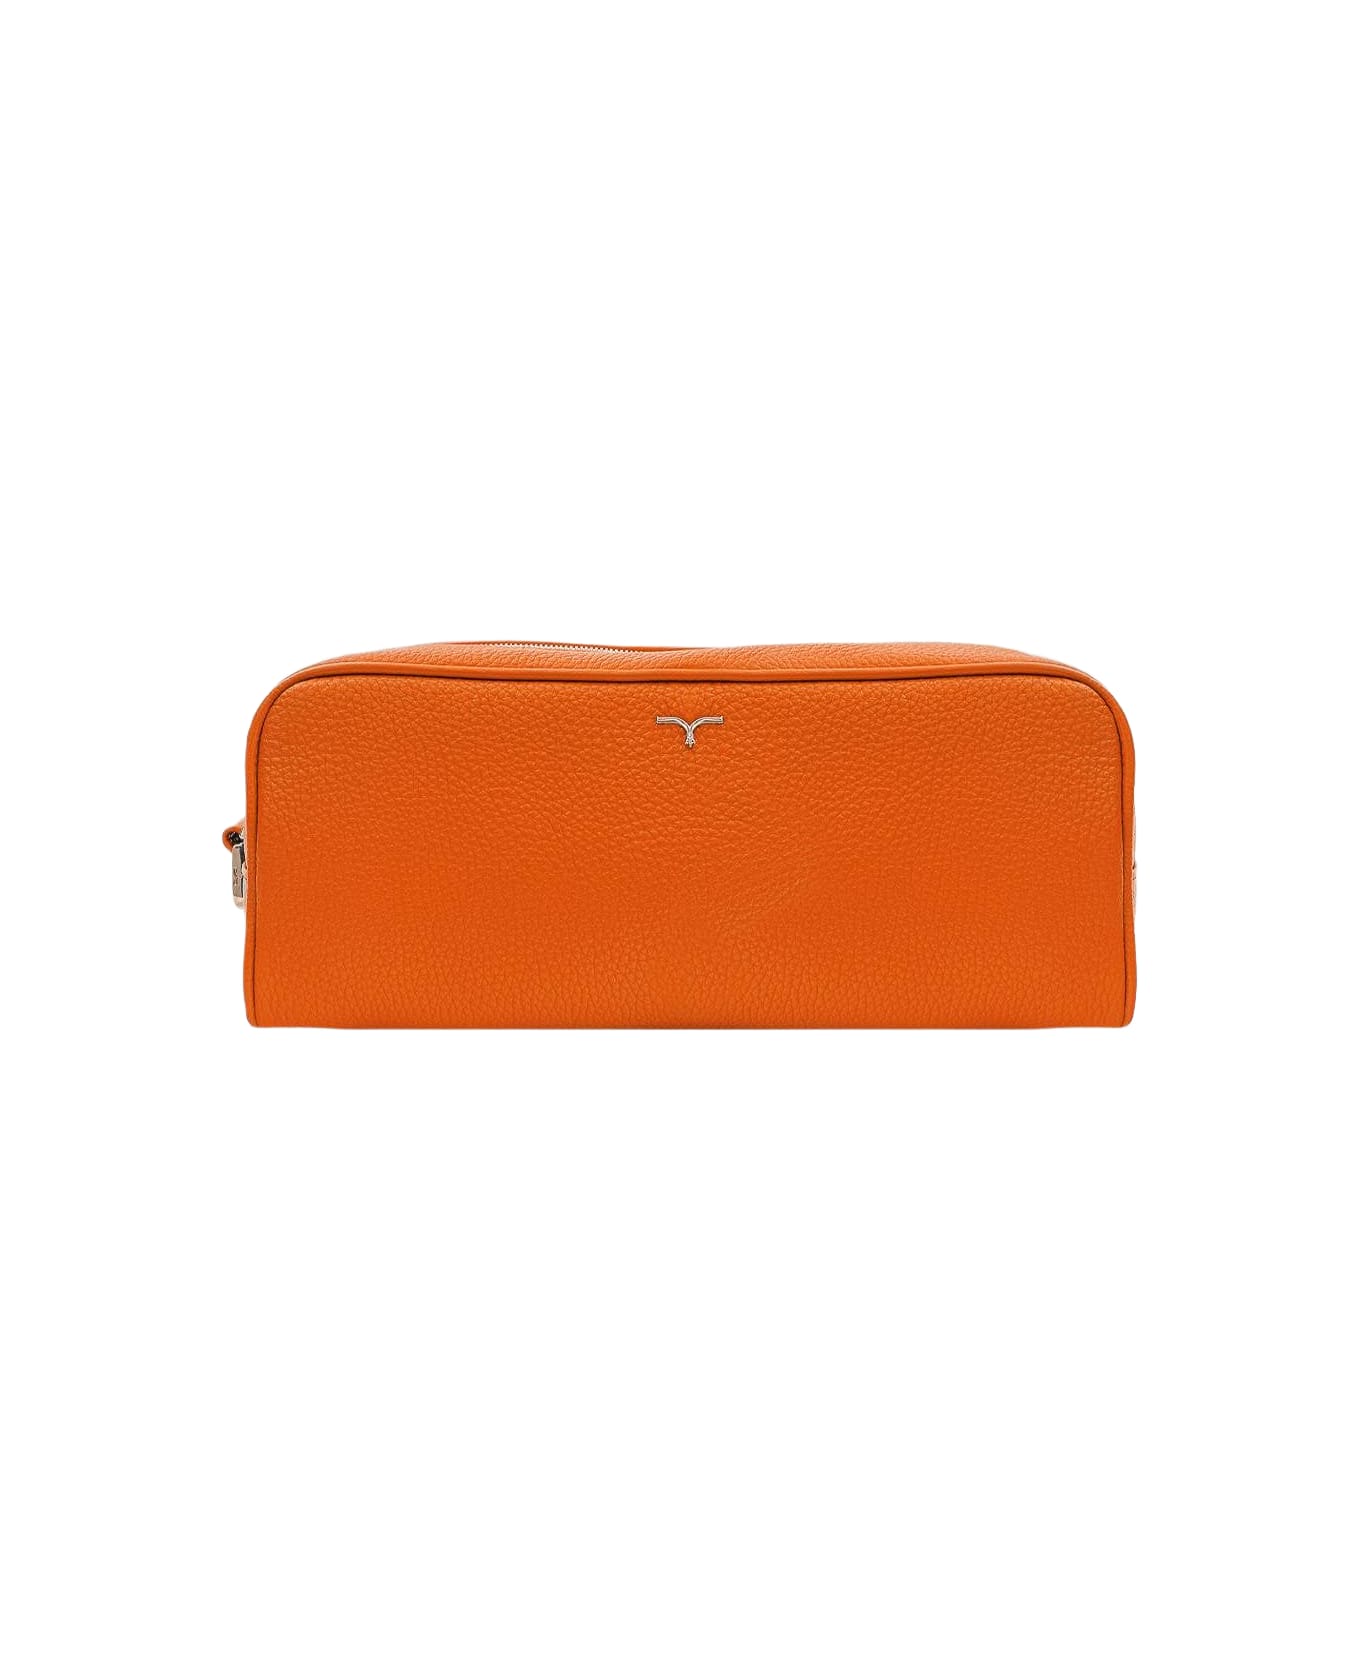 Larusmiani Wash Bag 'tzar' Luggage - Orange